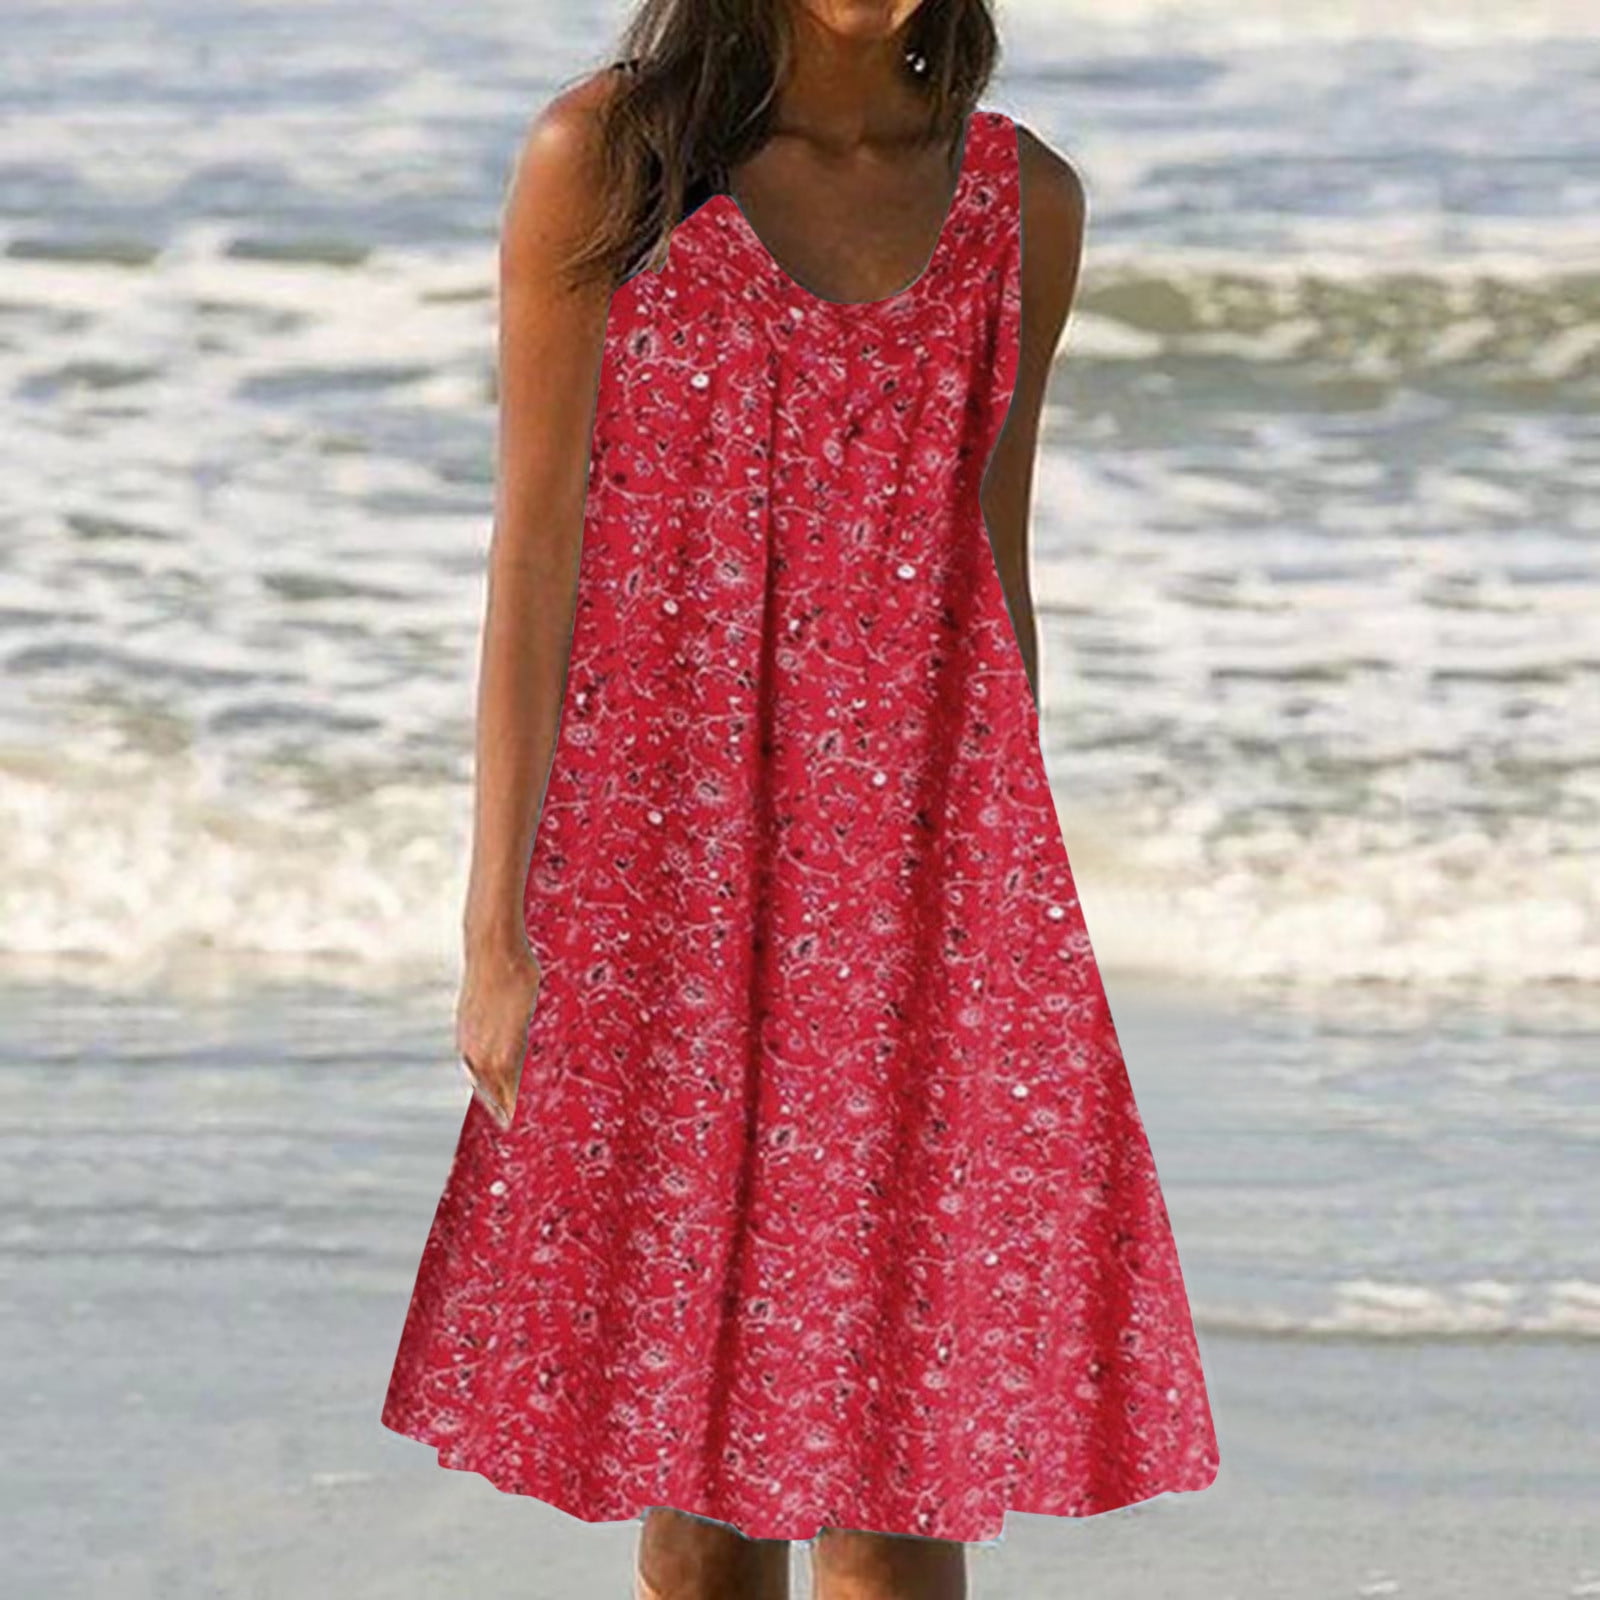 Womens Dress Clearance under 5 Women's Summer Print Dress Short Sleeve ...